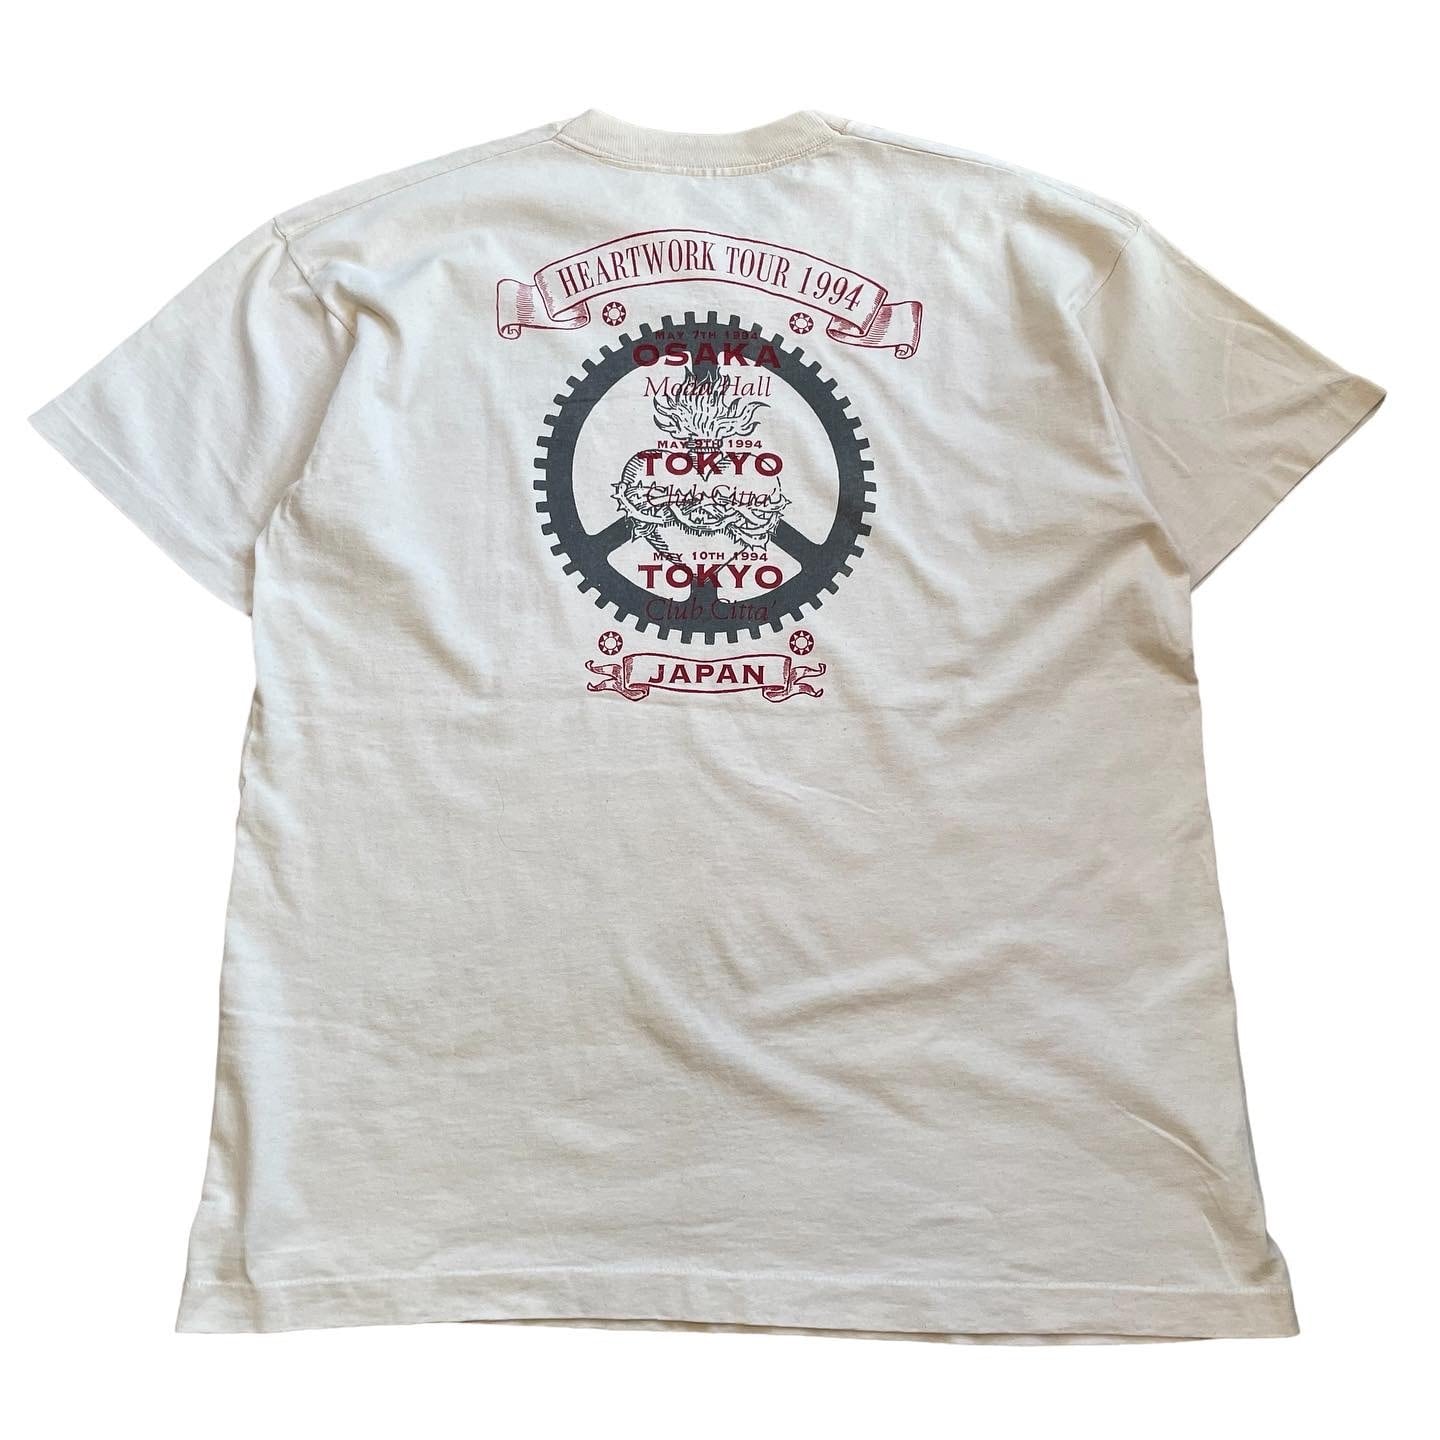 carcass 94年HEARTWORKツアーtシャツ